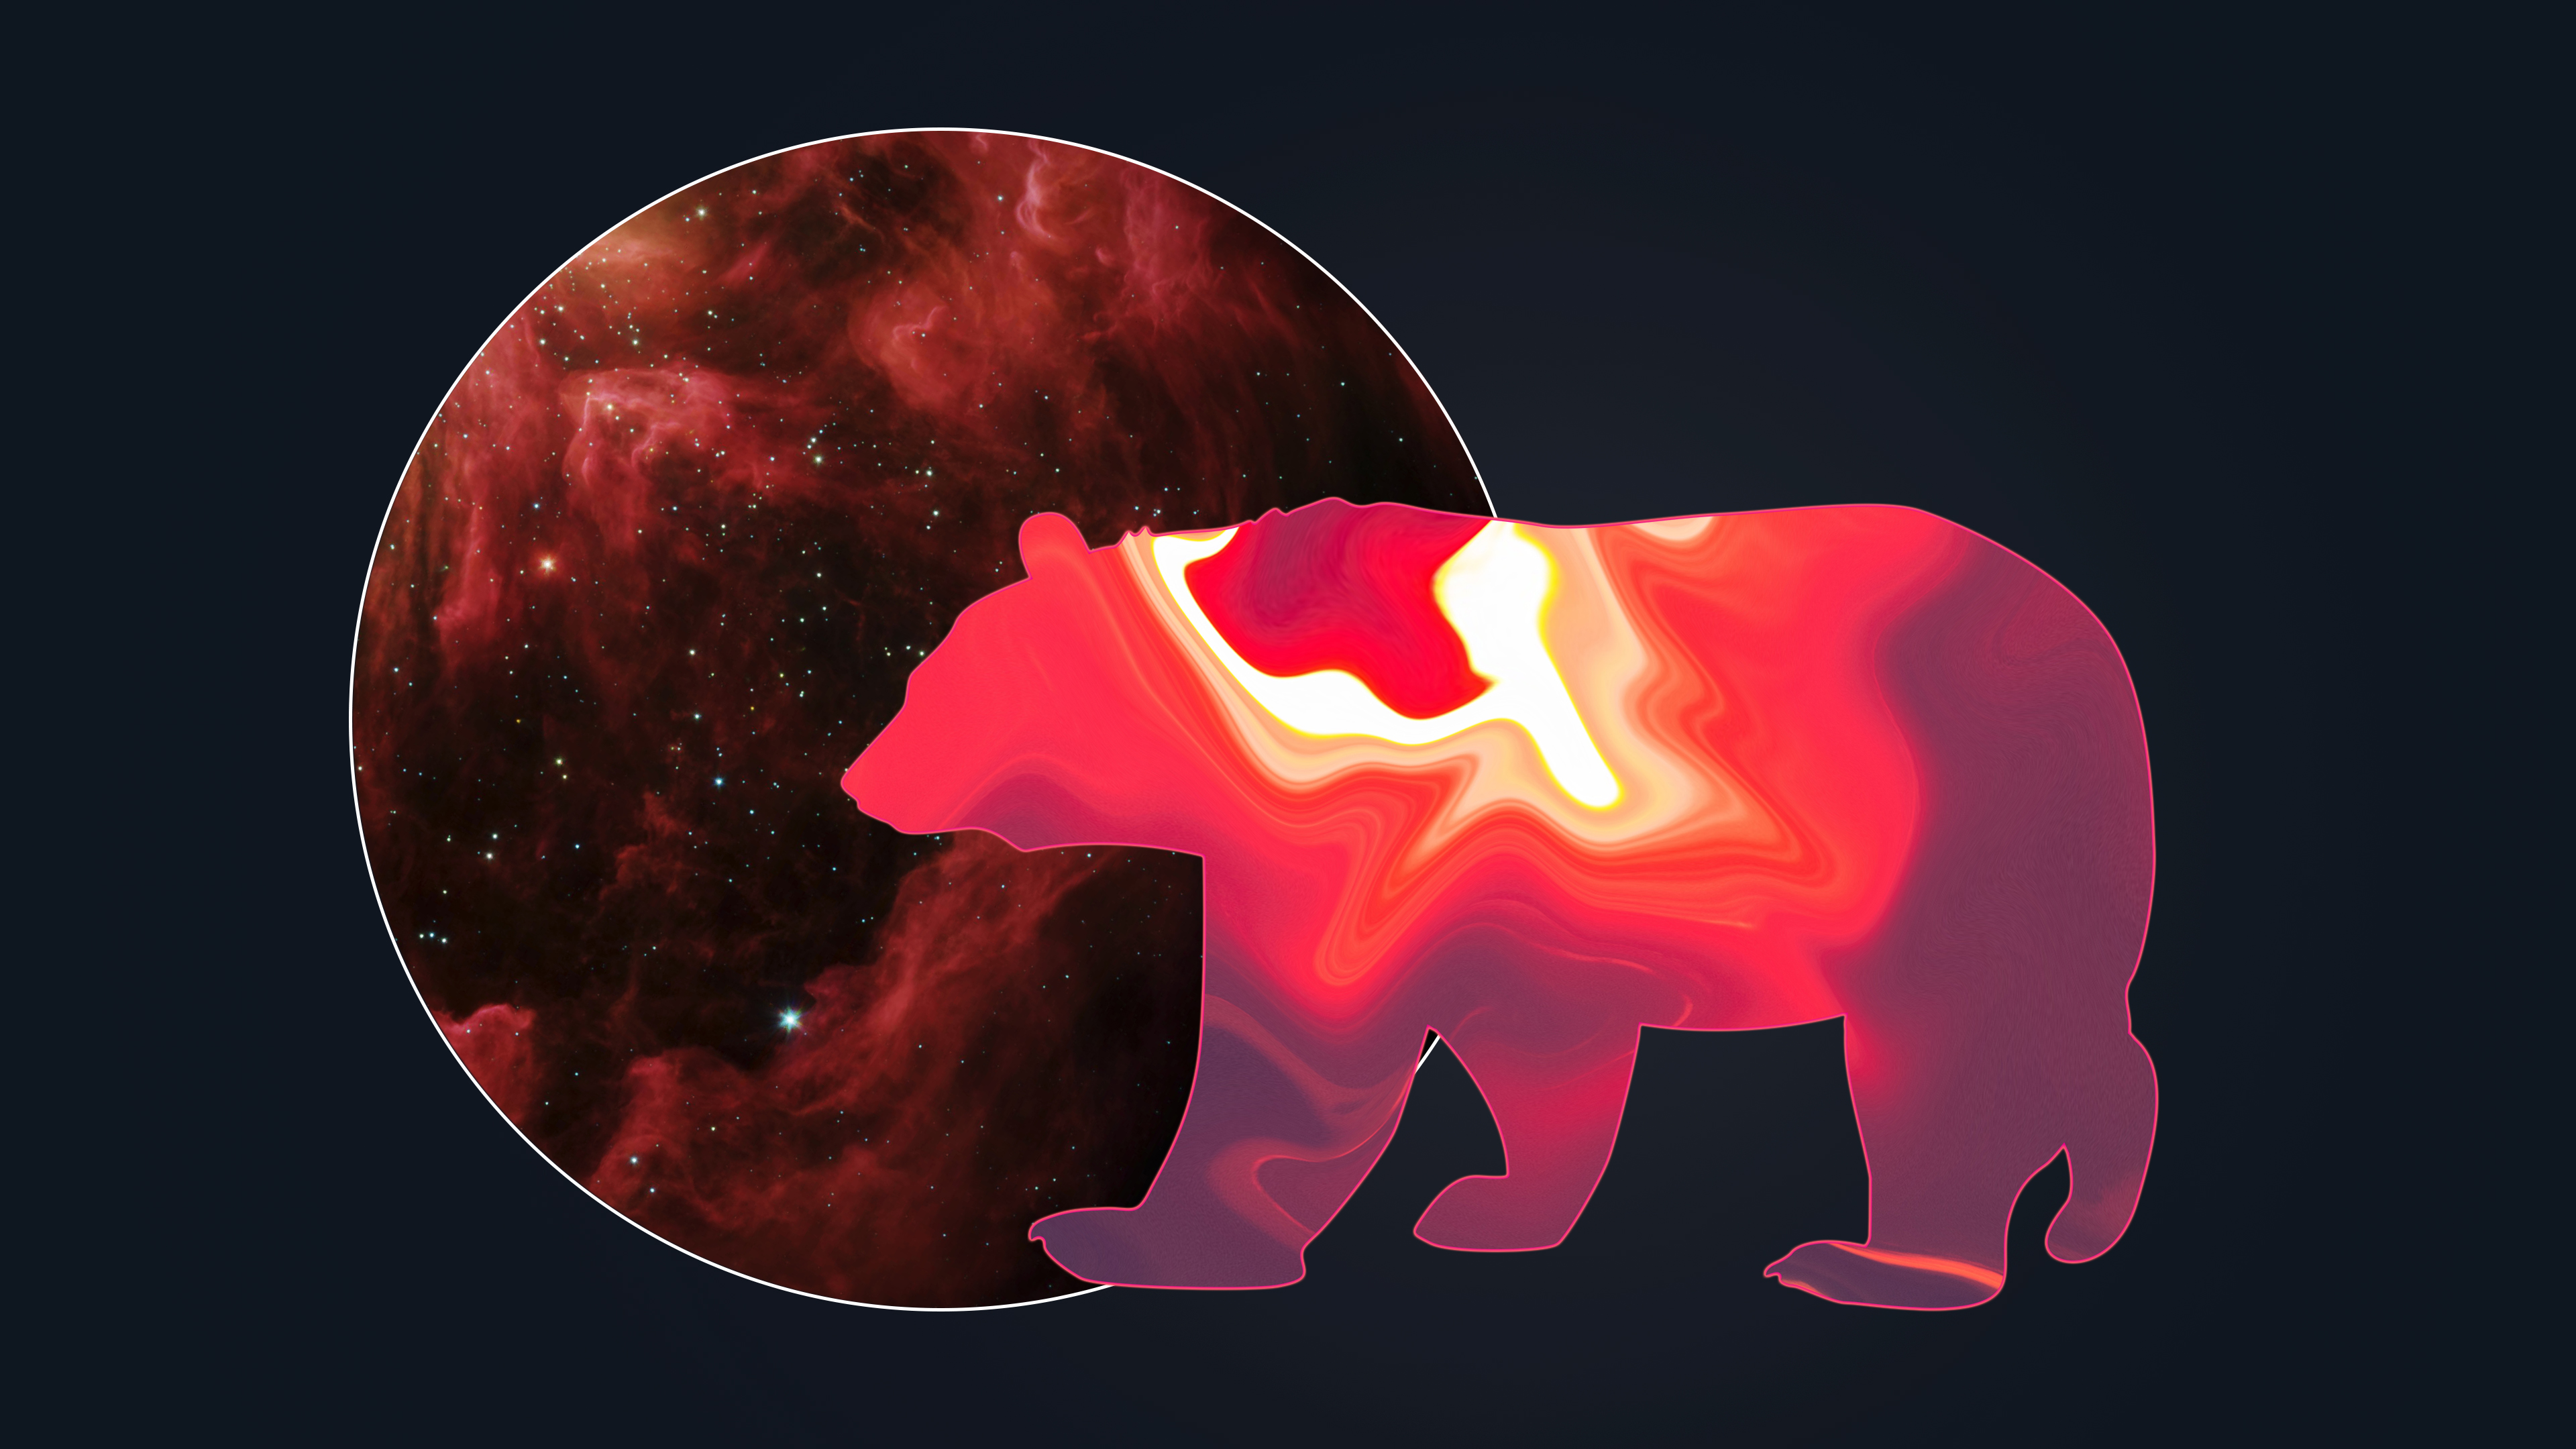 Скачать обои бесплатно Животные, Космос, Медведи, Медведь картинка на рабочий стол ПК